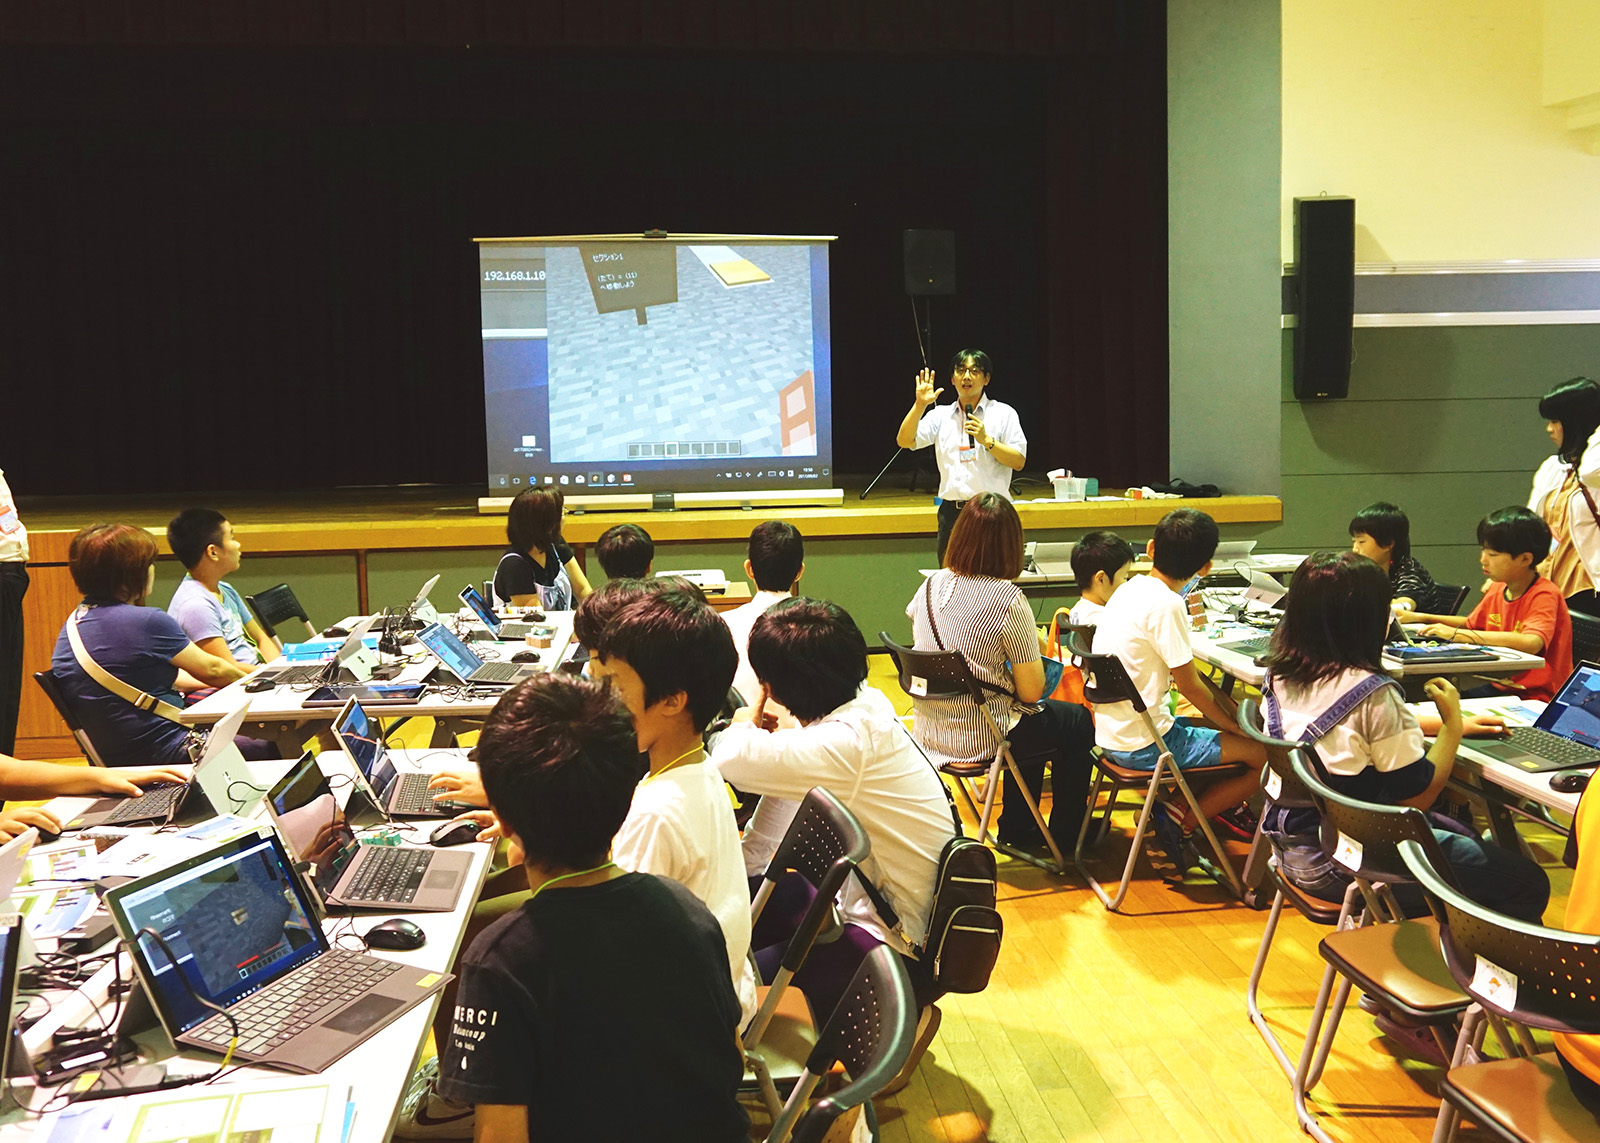 2017年9月2日、徳島県東みよし町で開催された「Minecraft:Education Edition」を活用したプログラミングのワークショップの模様